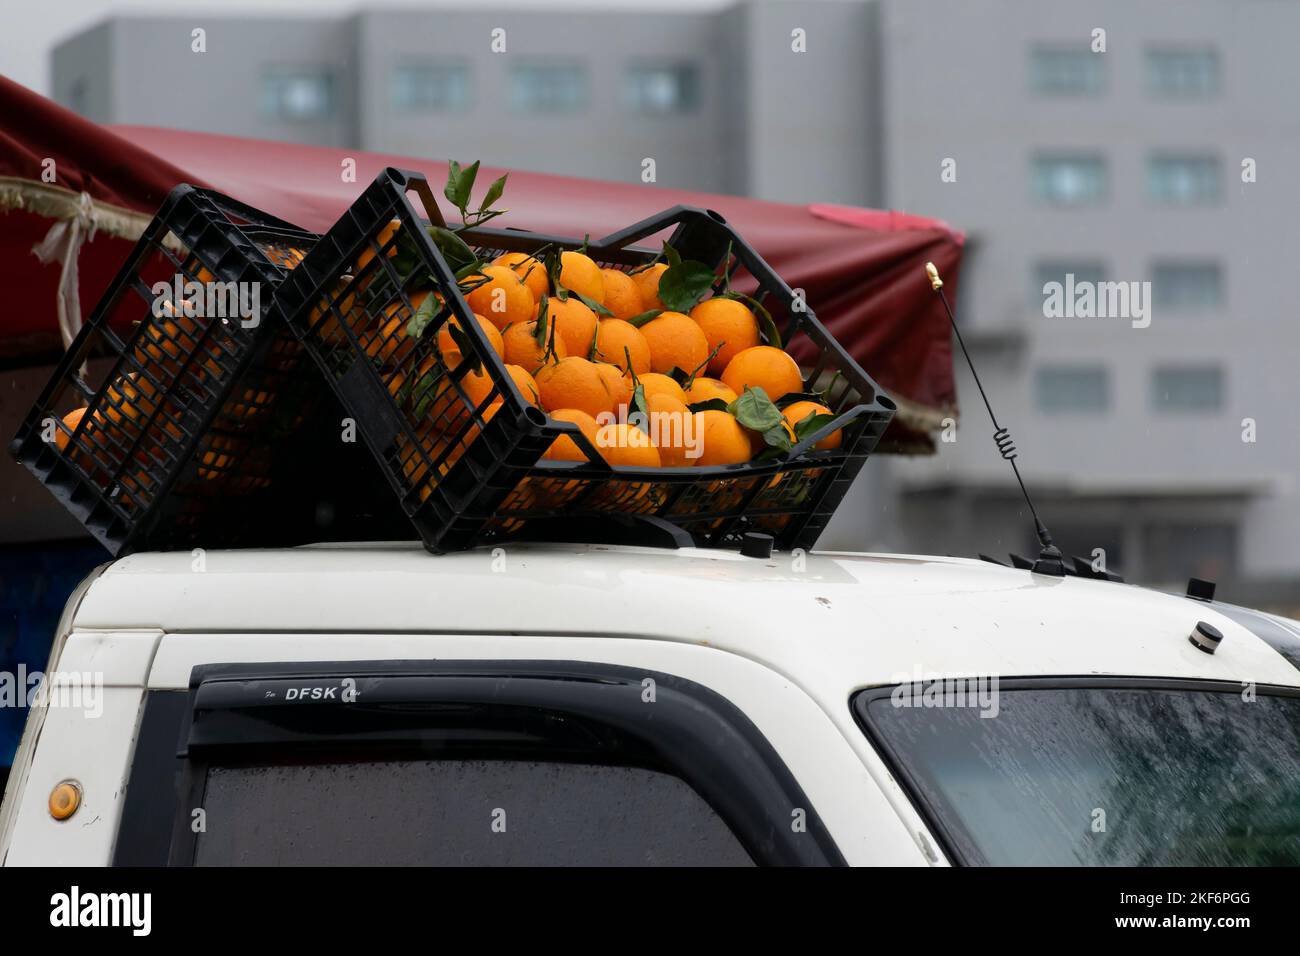 Caisses orange sur le toit d'un mini-camion. Côte à côte dans une position symétrique. Mouiller avec des gouttes d'eau par temps pluvieux. Partie de tente rouge. Banque D'Images